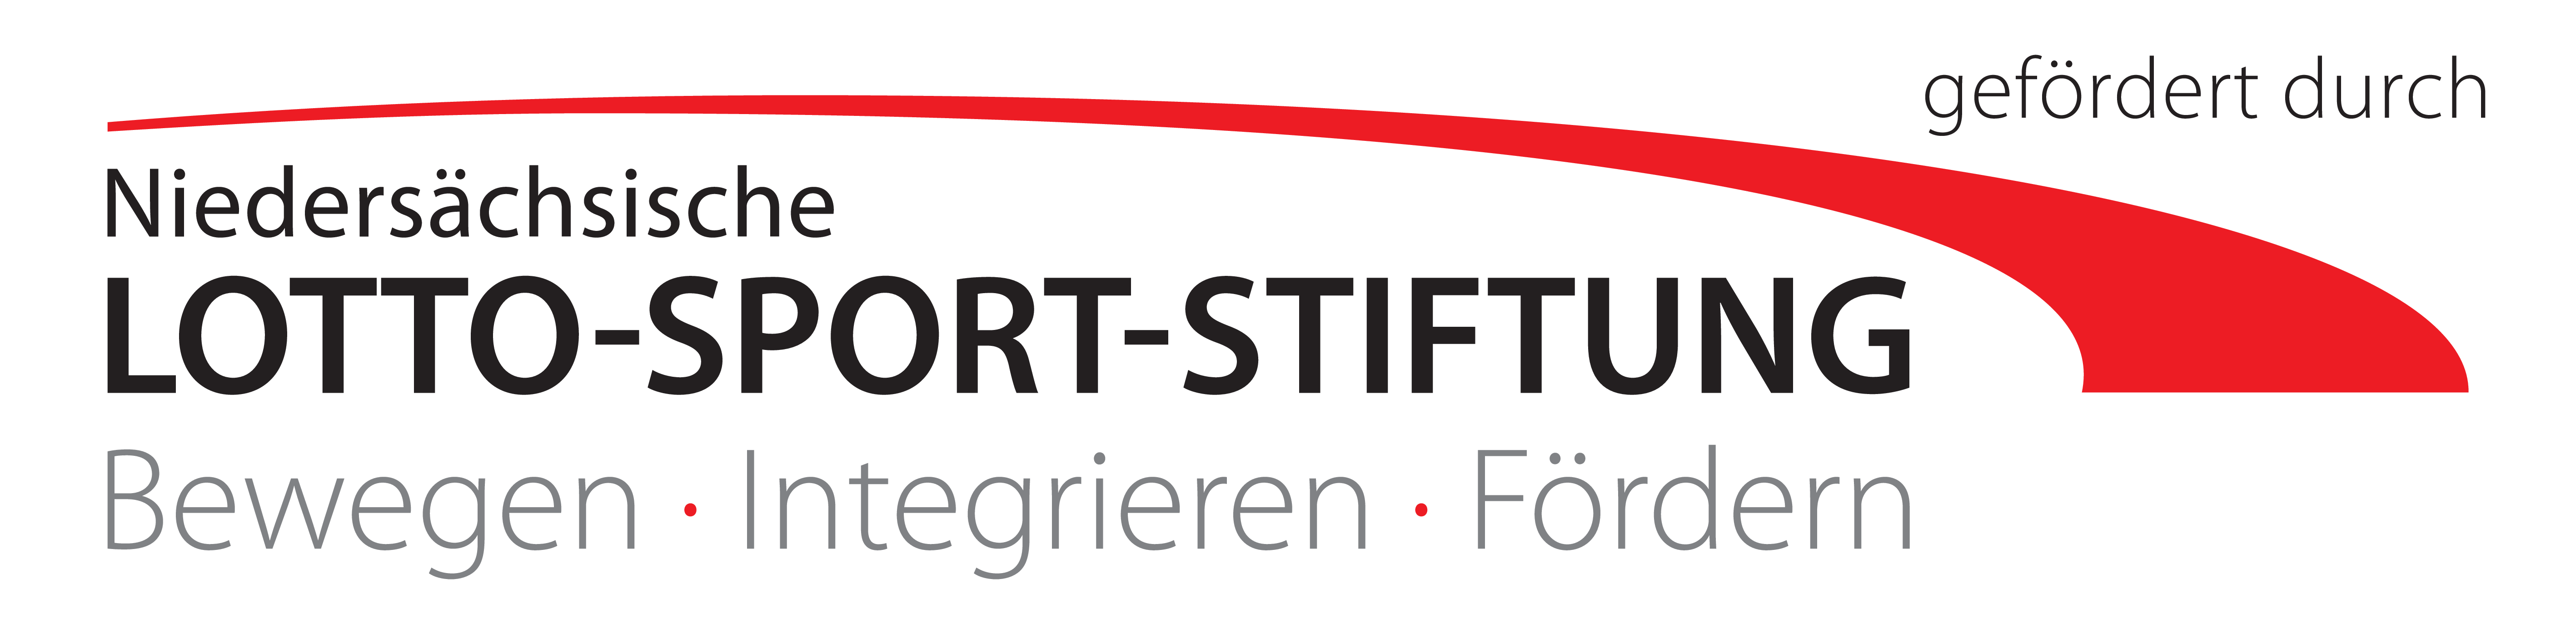 Nds Lotto Sport Stiftung gefoerdert durch